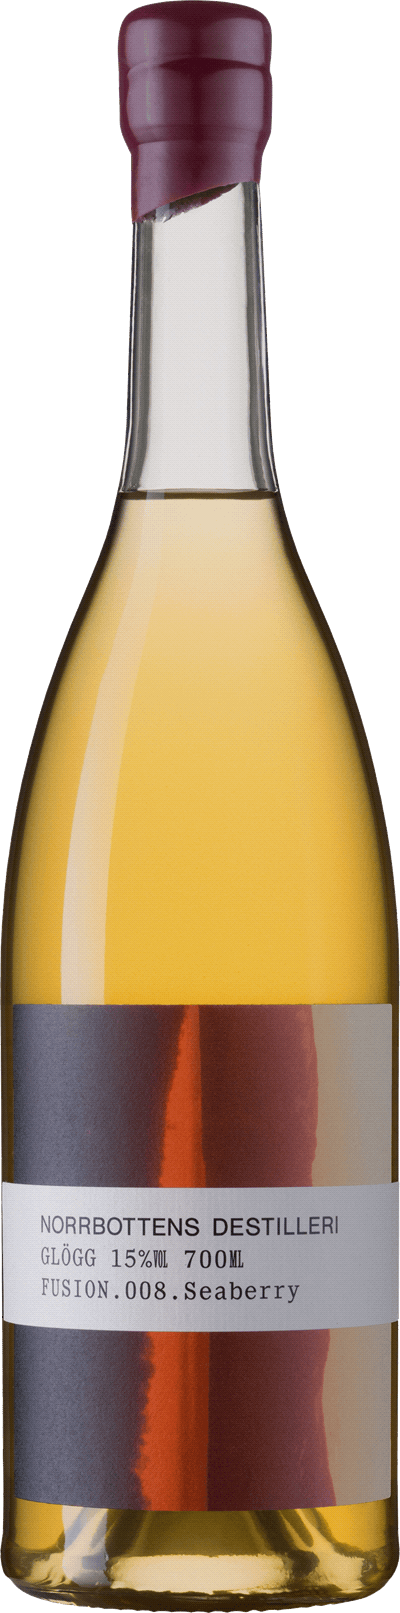 Norrbottens Destilleri Fusion.008.Seaberry Glögg